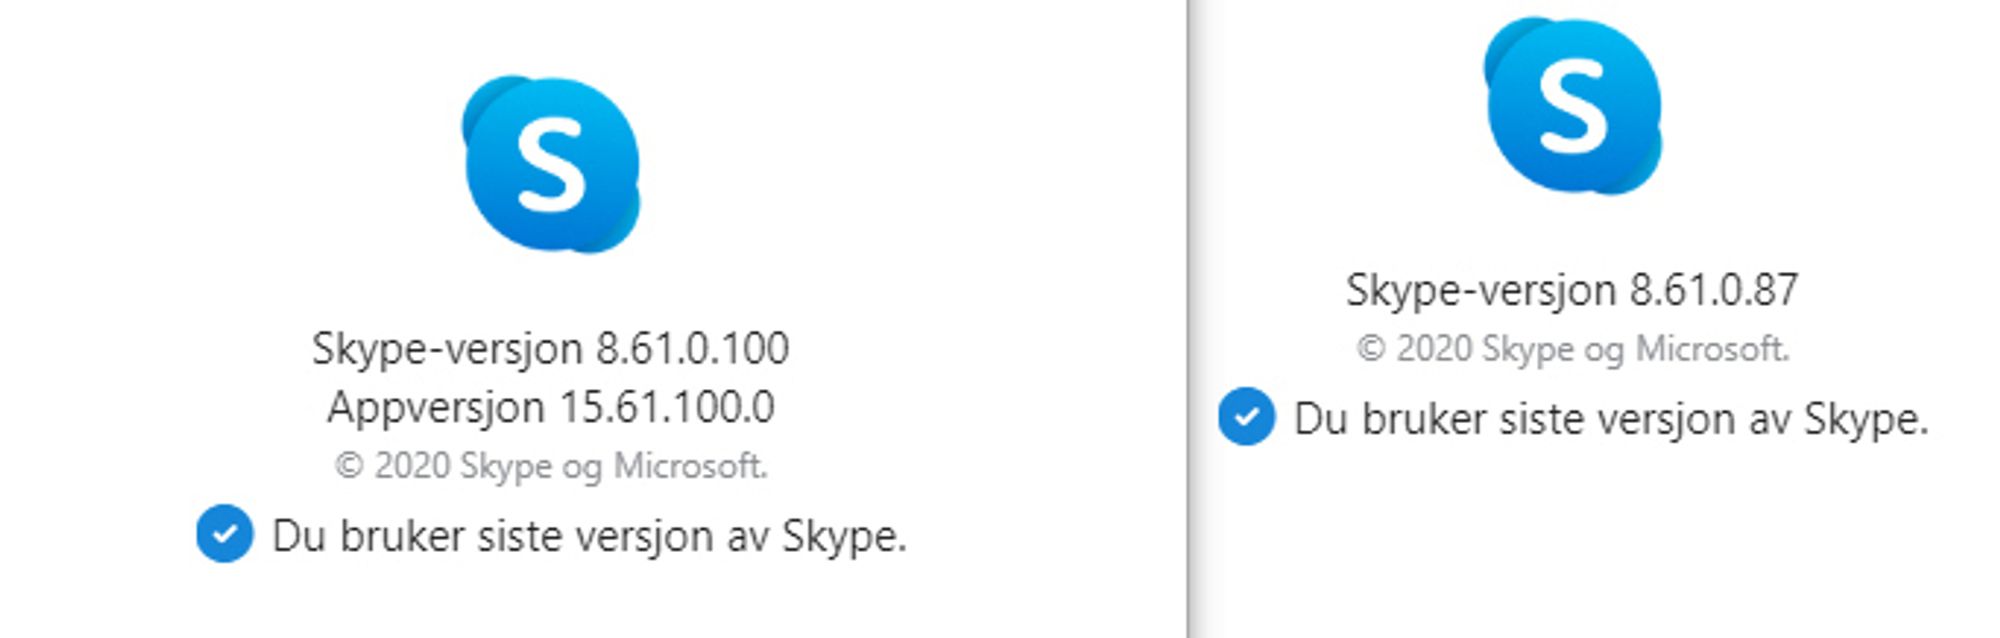 Versjonsnumrene til Skype for Windows 10 (til venstre) og Skype for Desktop. 